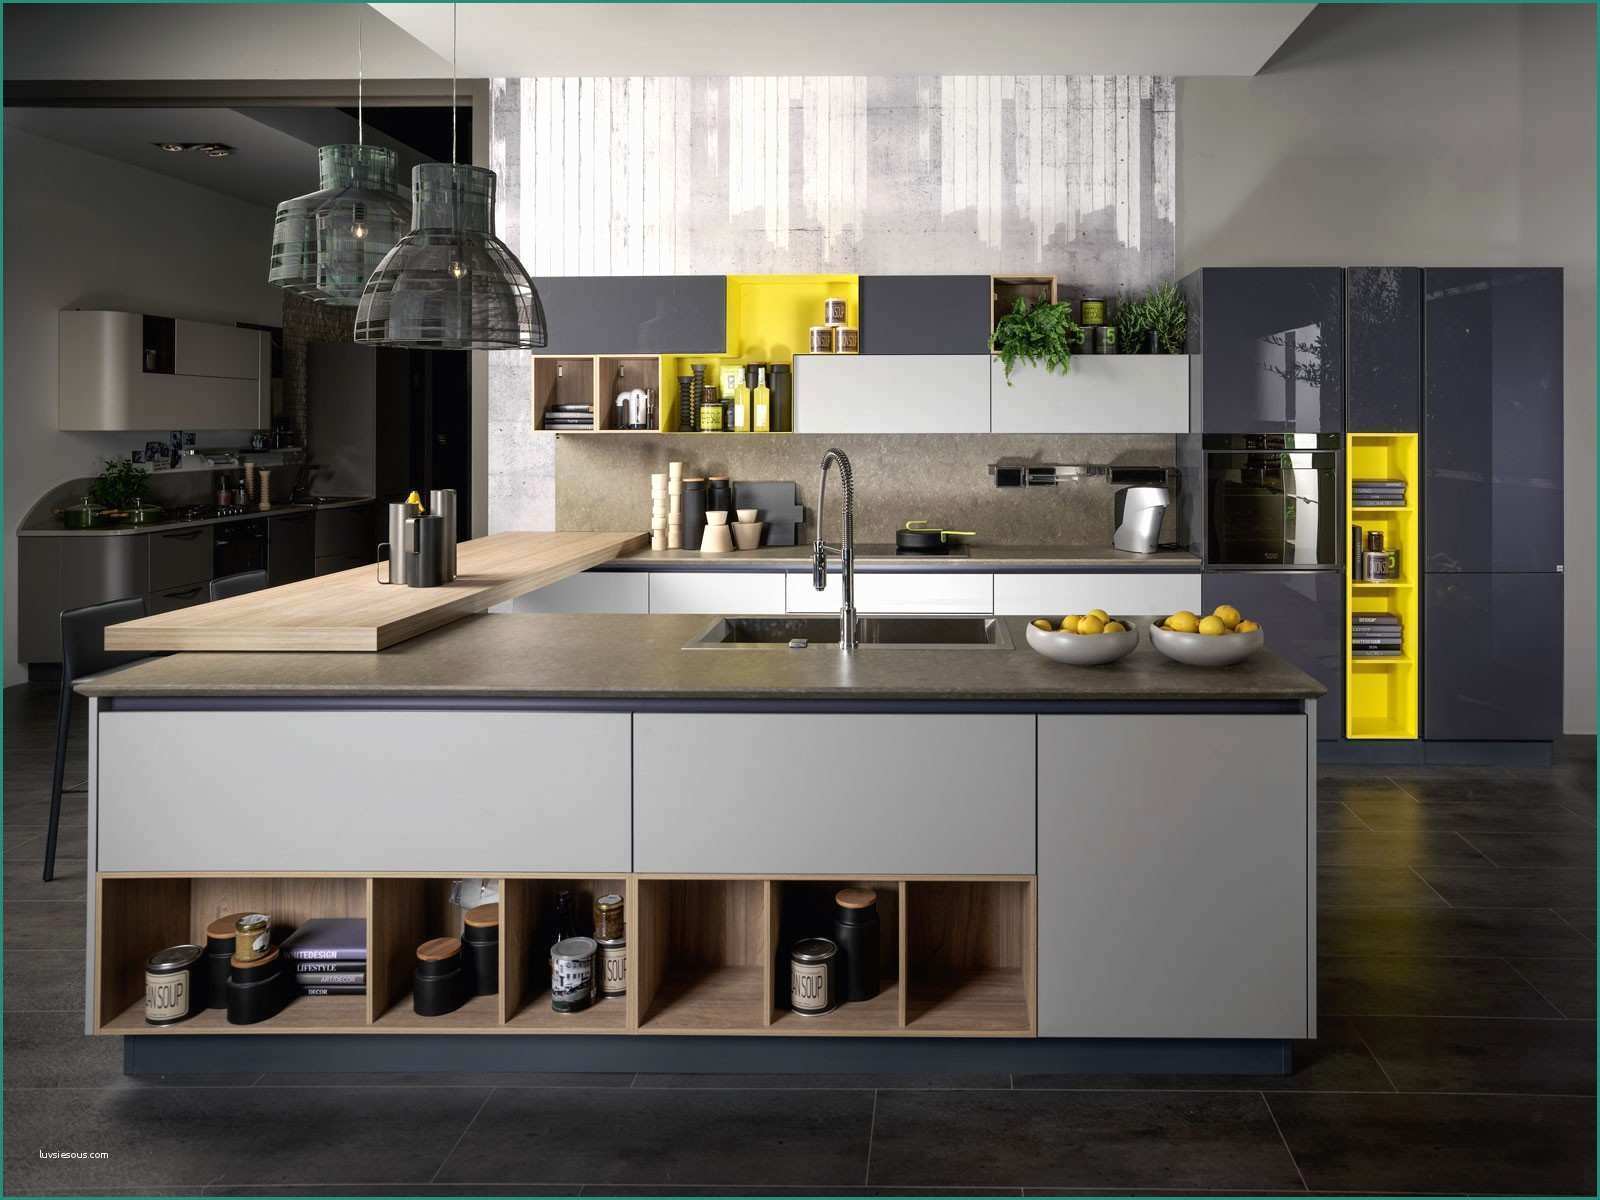 Dimensioni Cucina Con isola E Cucina Con isola Dimensioni Cucina Con isola Ikea Design Per La